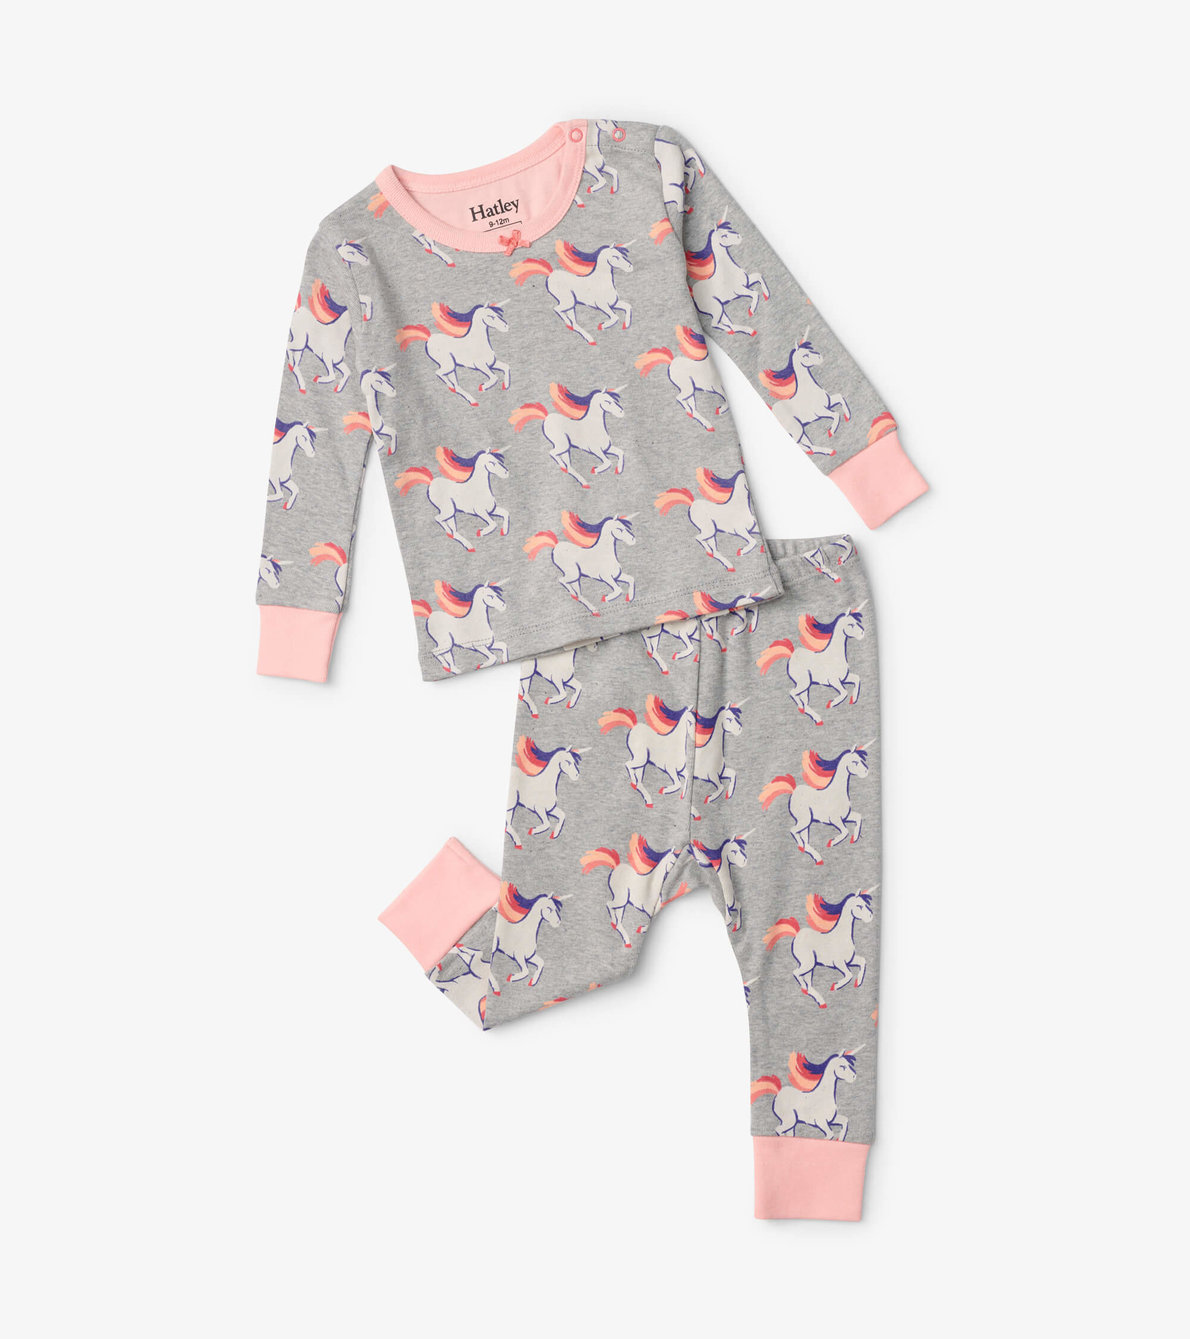 View larger image of Galloping Unicorn Baby Pajama Set